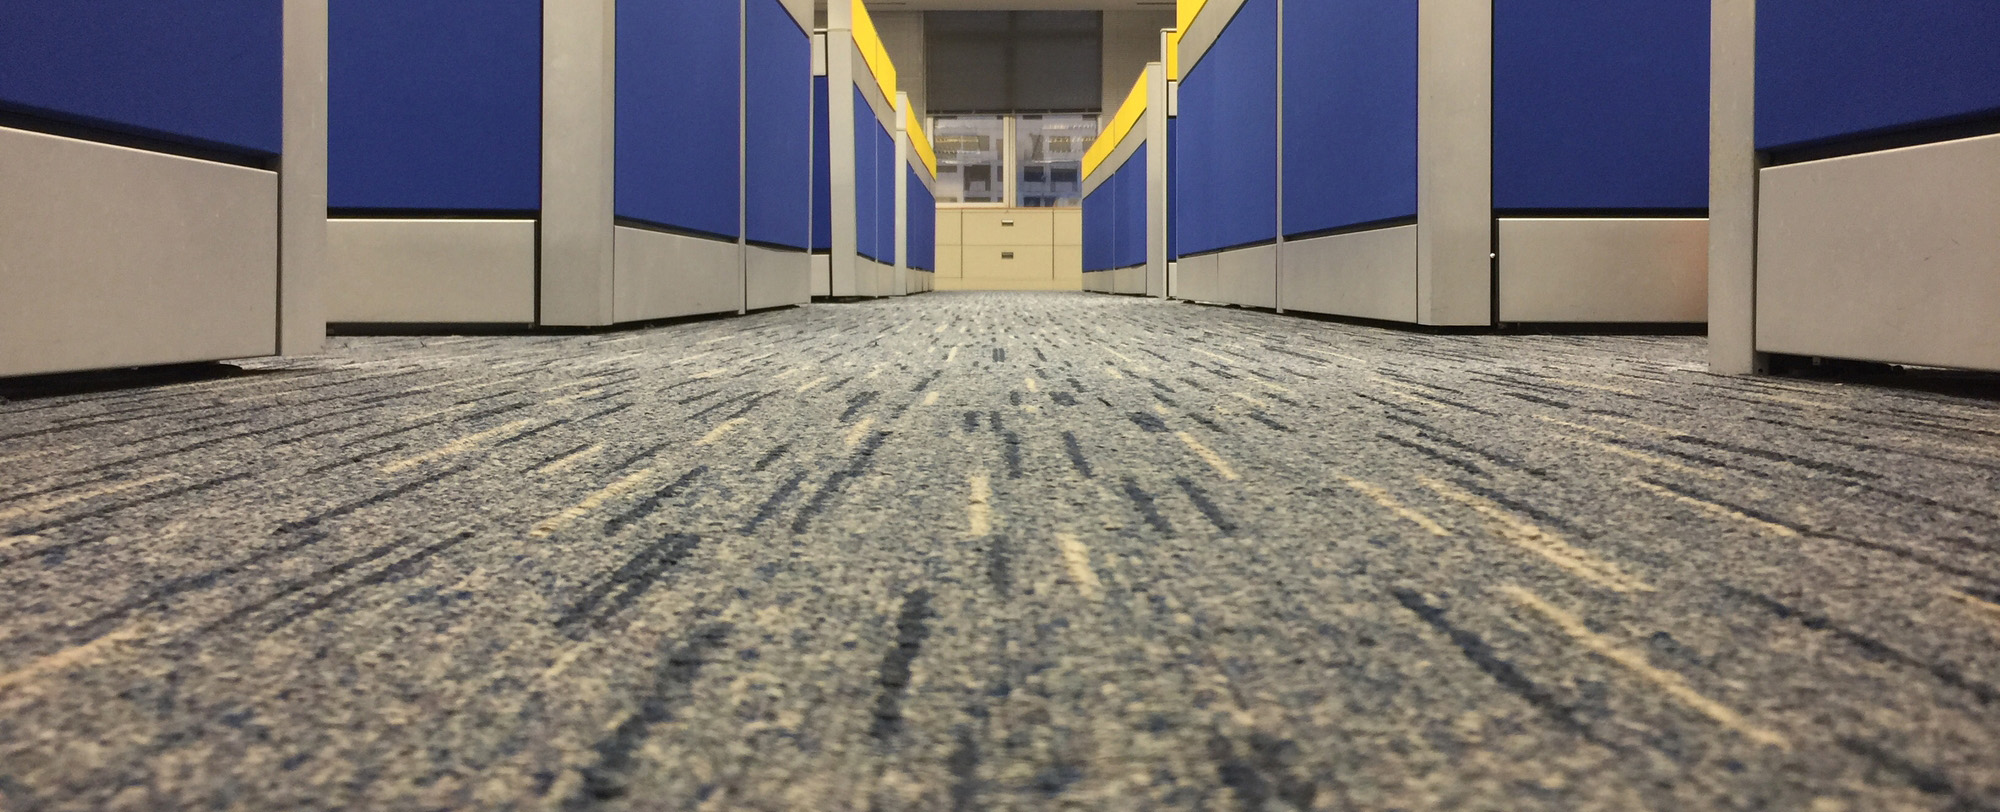 office floor